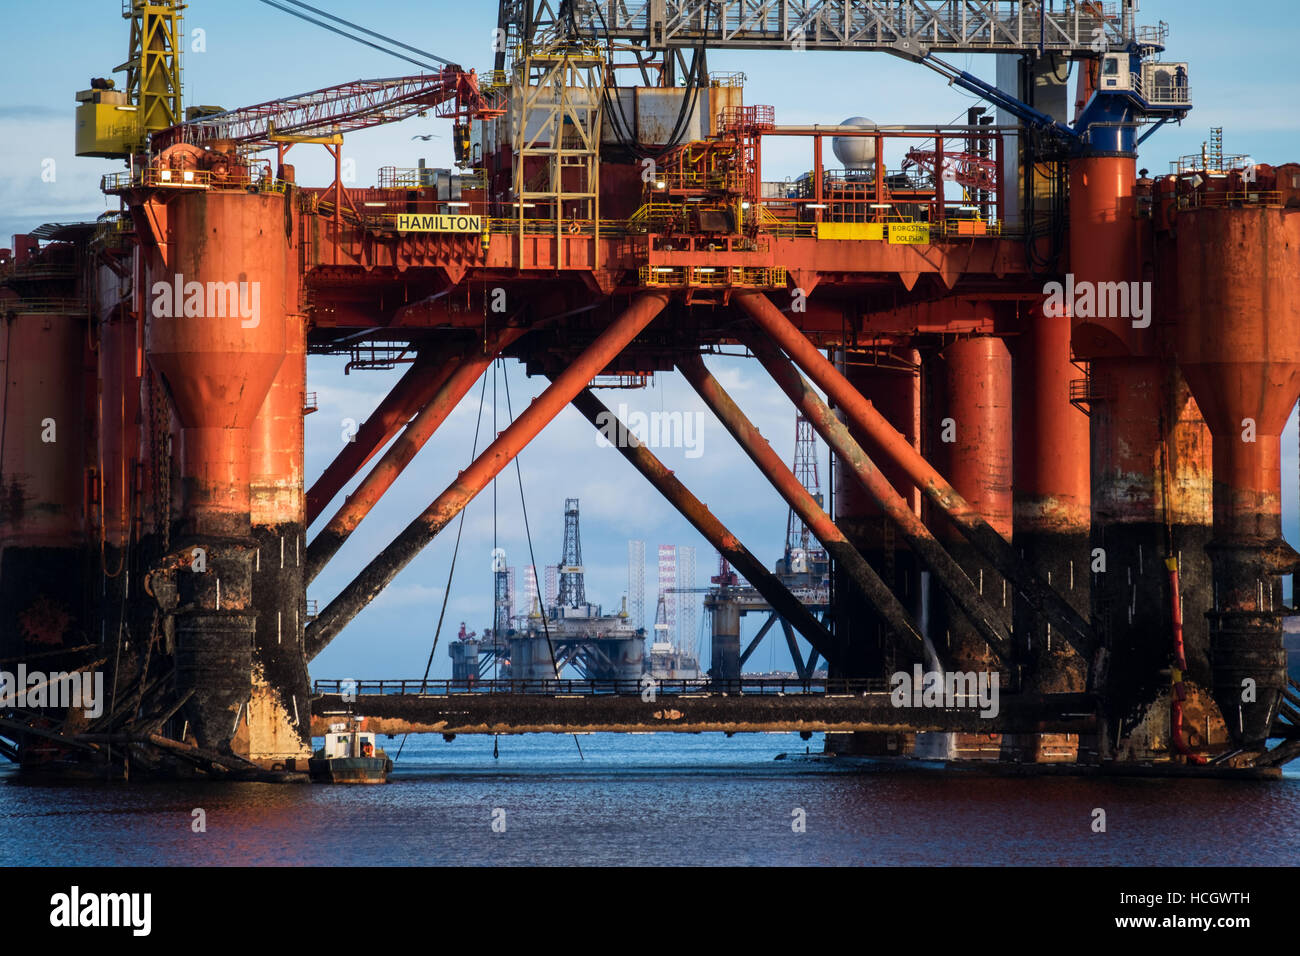 Drilling Platform, Borgsten Dolphin, in Invergordon, Scotland Stock Photo